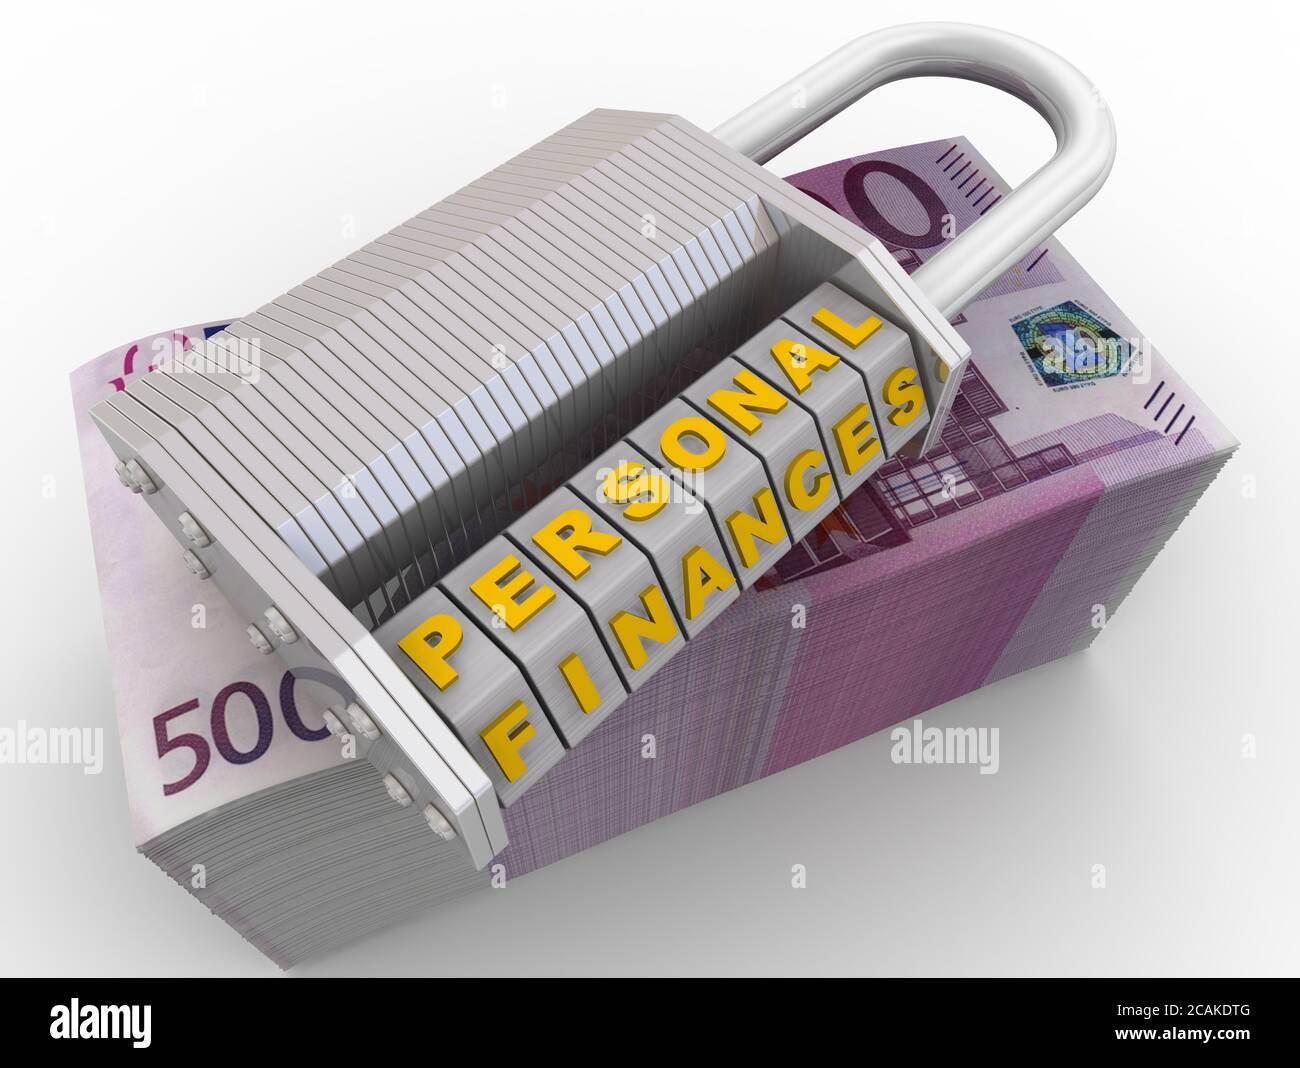 Les finances personnelles sont protégées. Cadenas à combinaison (mot-clé) avec lettres FINANCES PERSONNELLES sur un paquet de billets en euros. Illustration 3D Banque D'Images